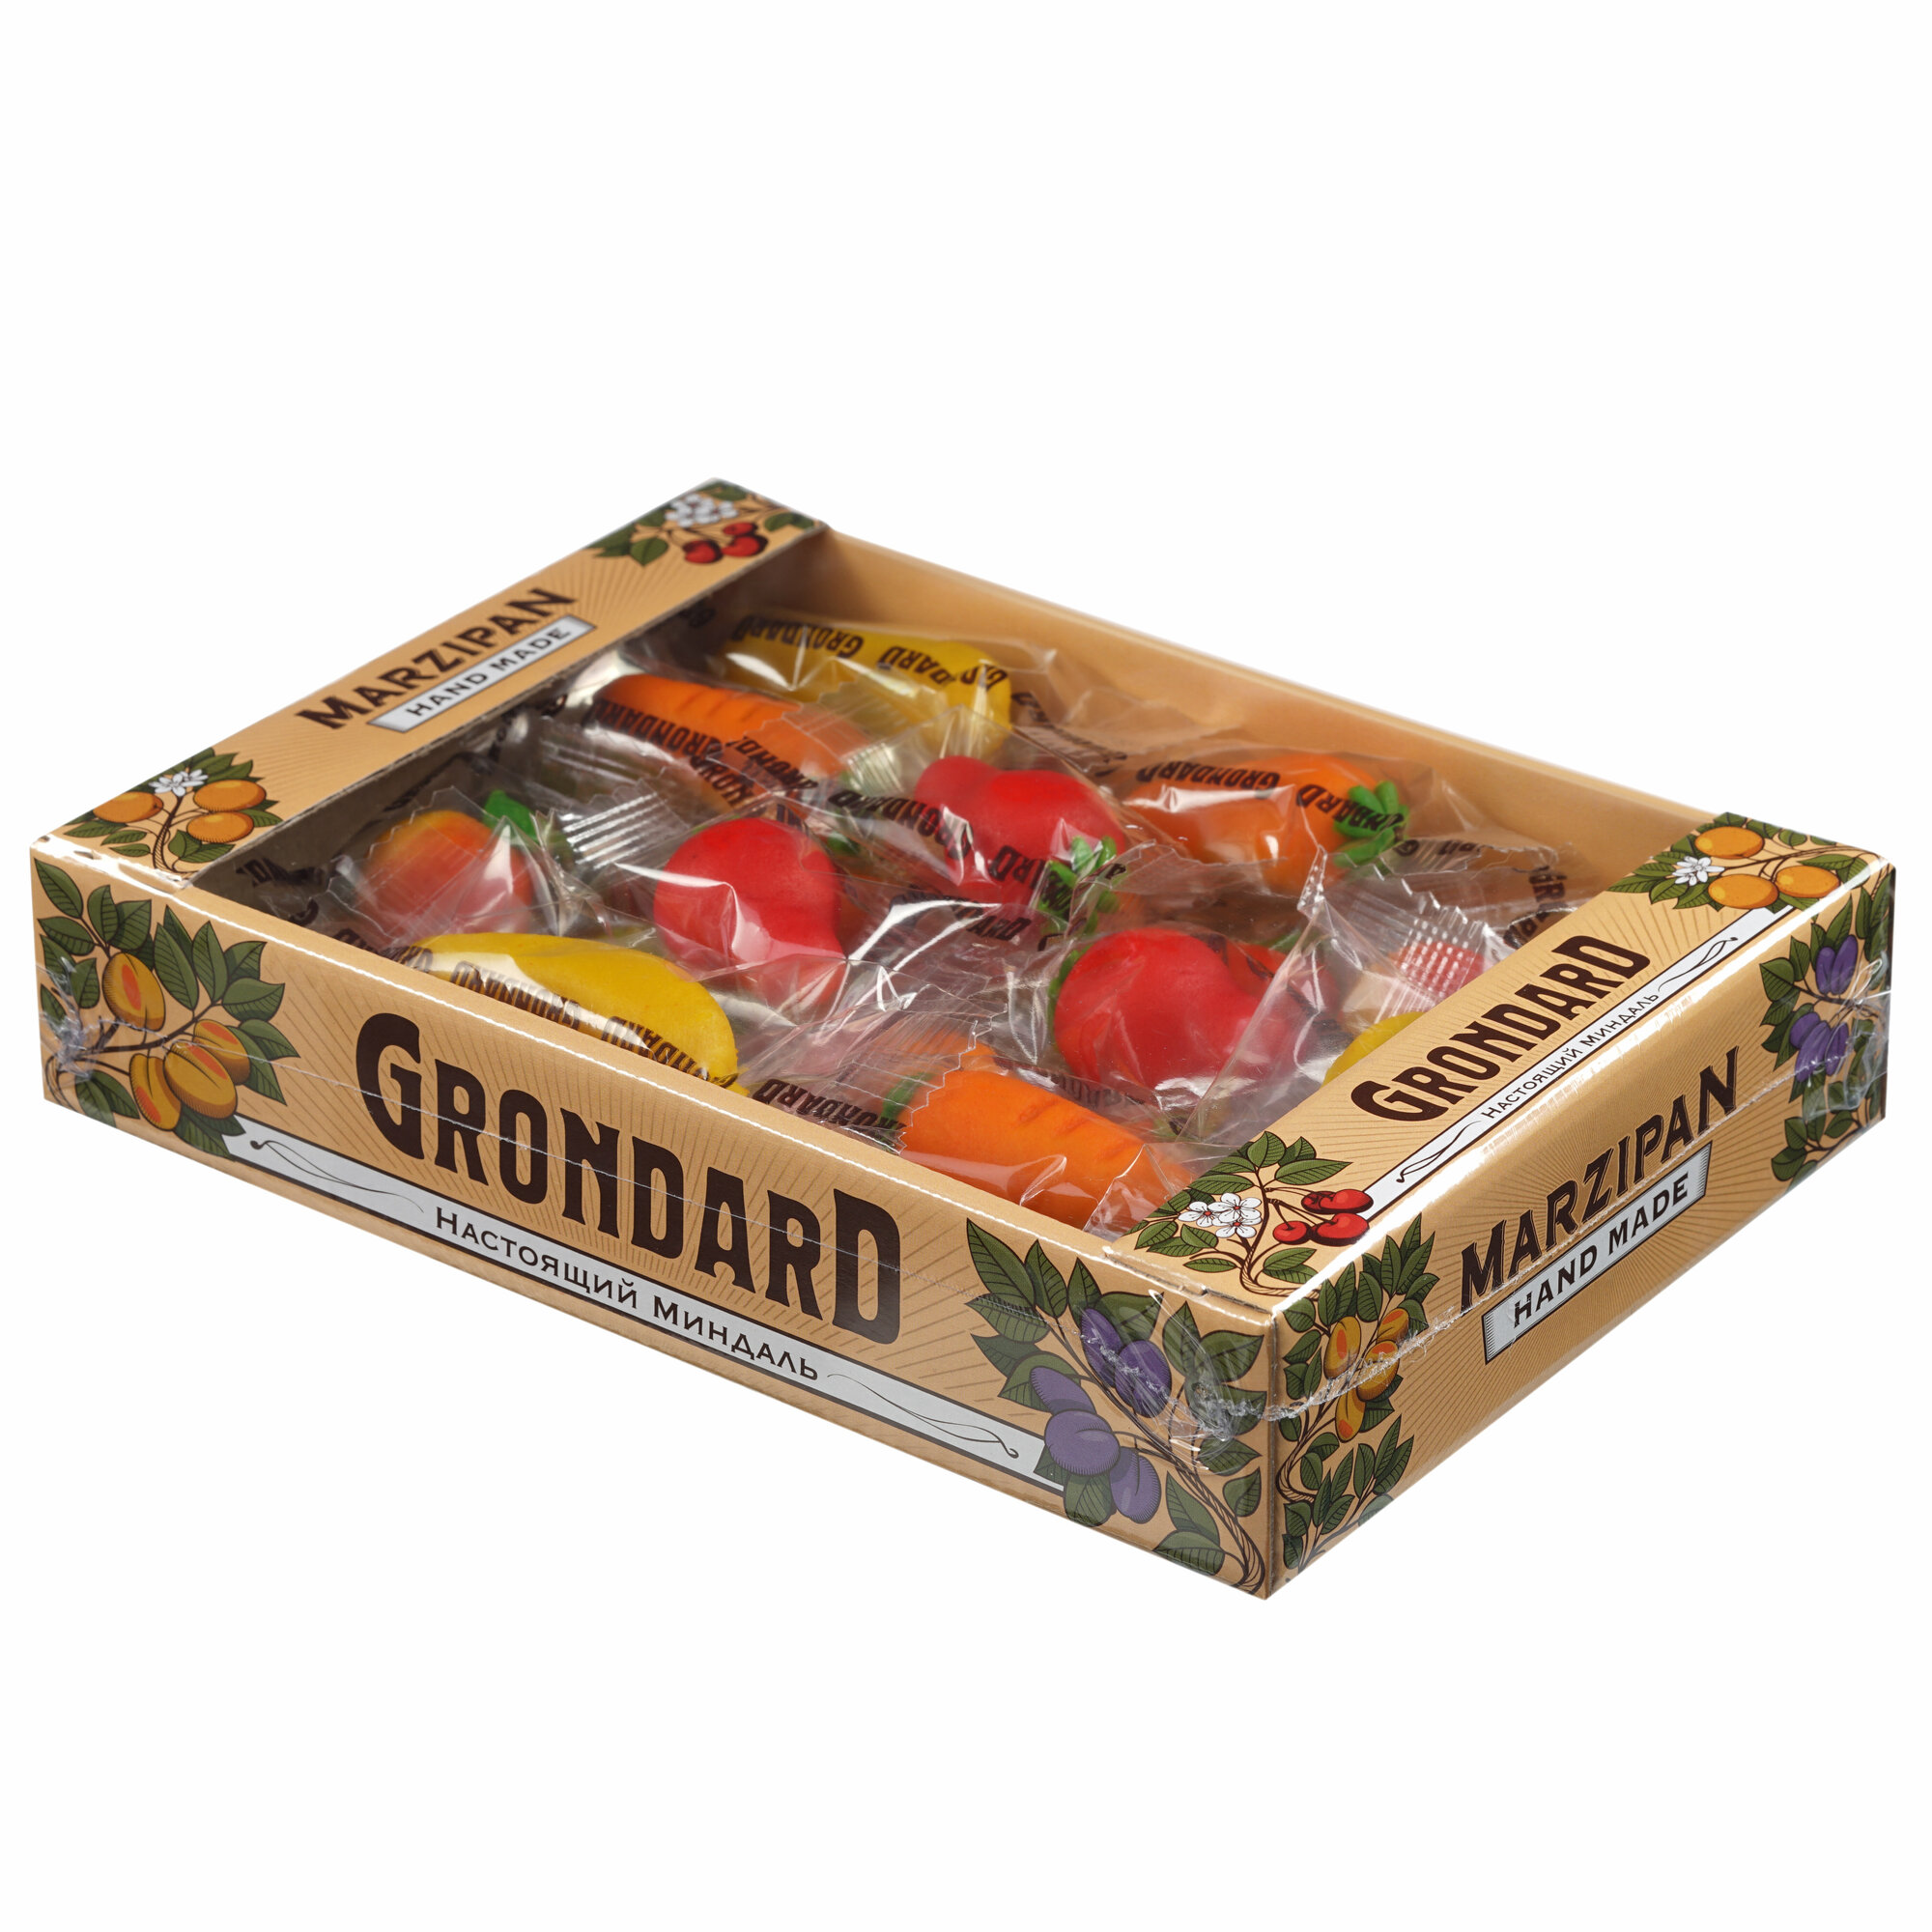 Конфеты "Марципановые фрукты" GRONDARD, 500 гр